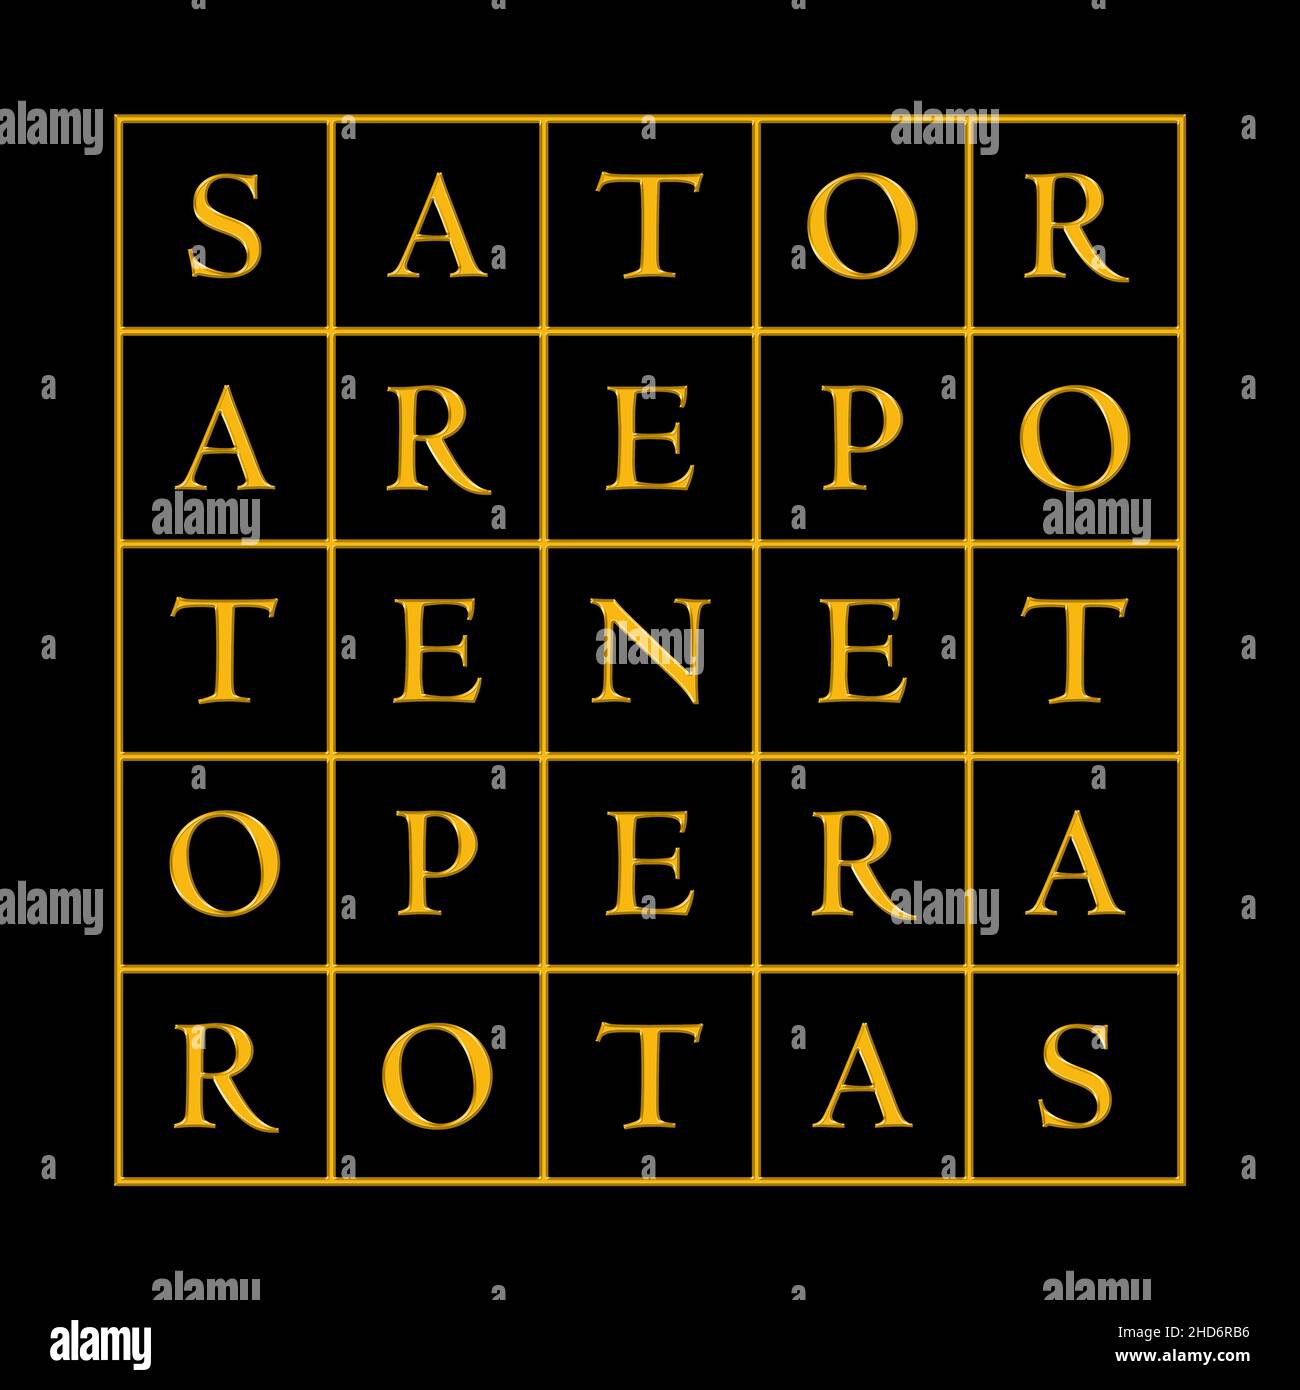 Golden Sator Square oder auch Rotas Square auf schwarzem Hintergrund. Wortquadrat, der das lateinische Palindrome Sator, Arepo, Tenet, Opera und Rotas enthält. Stockfoto